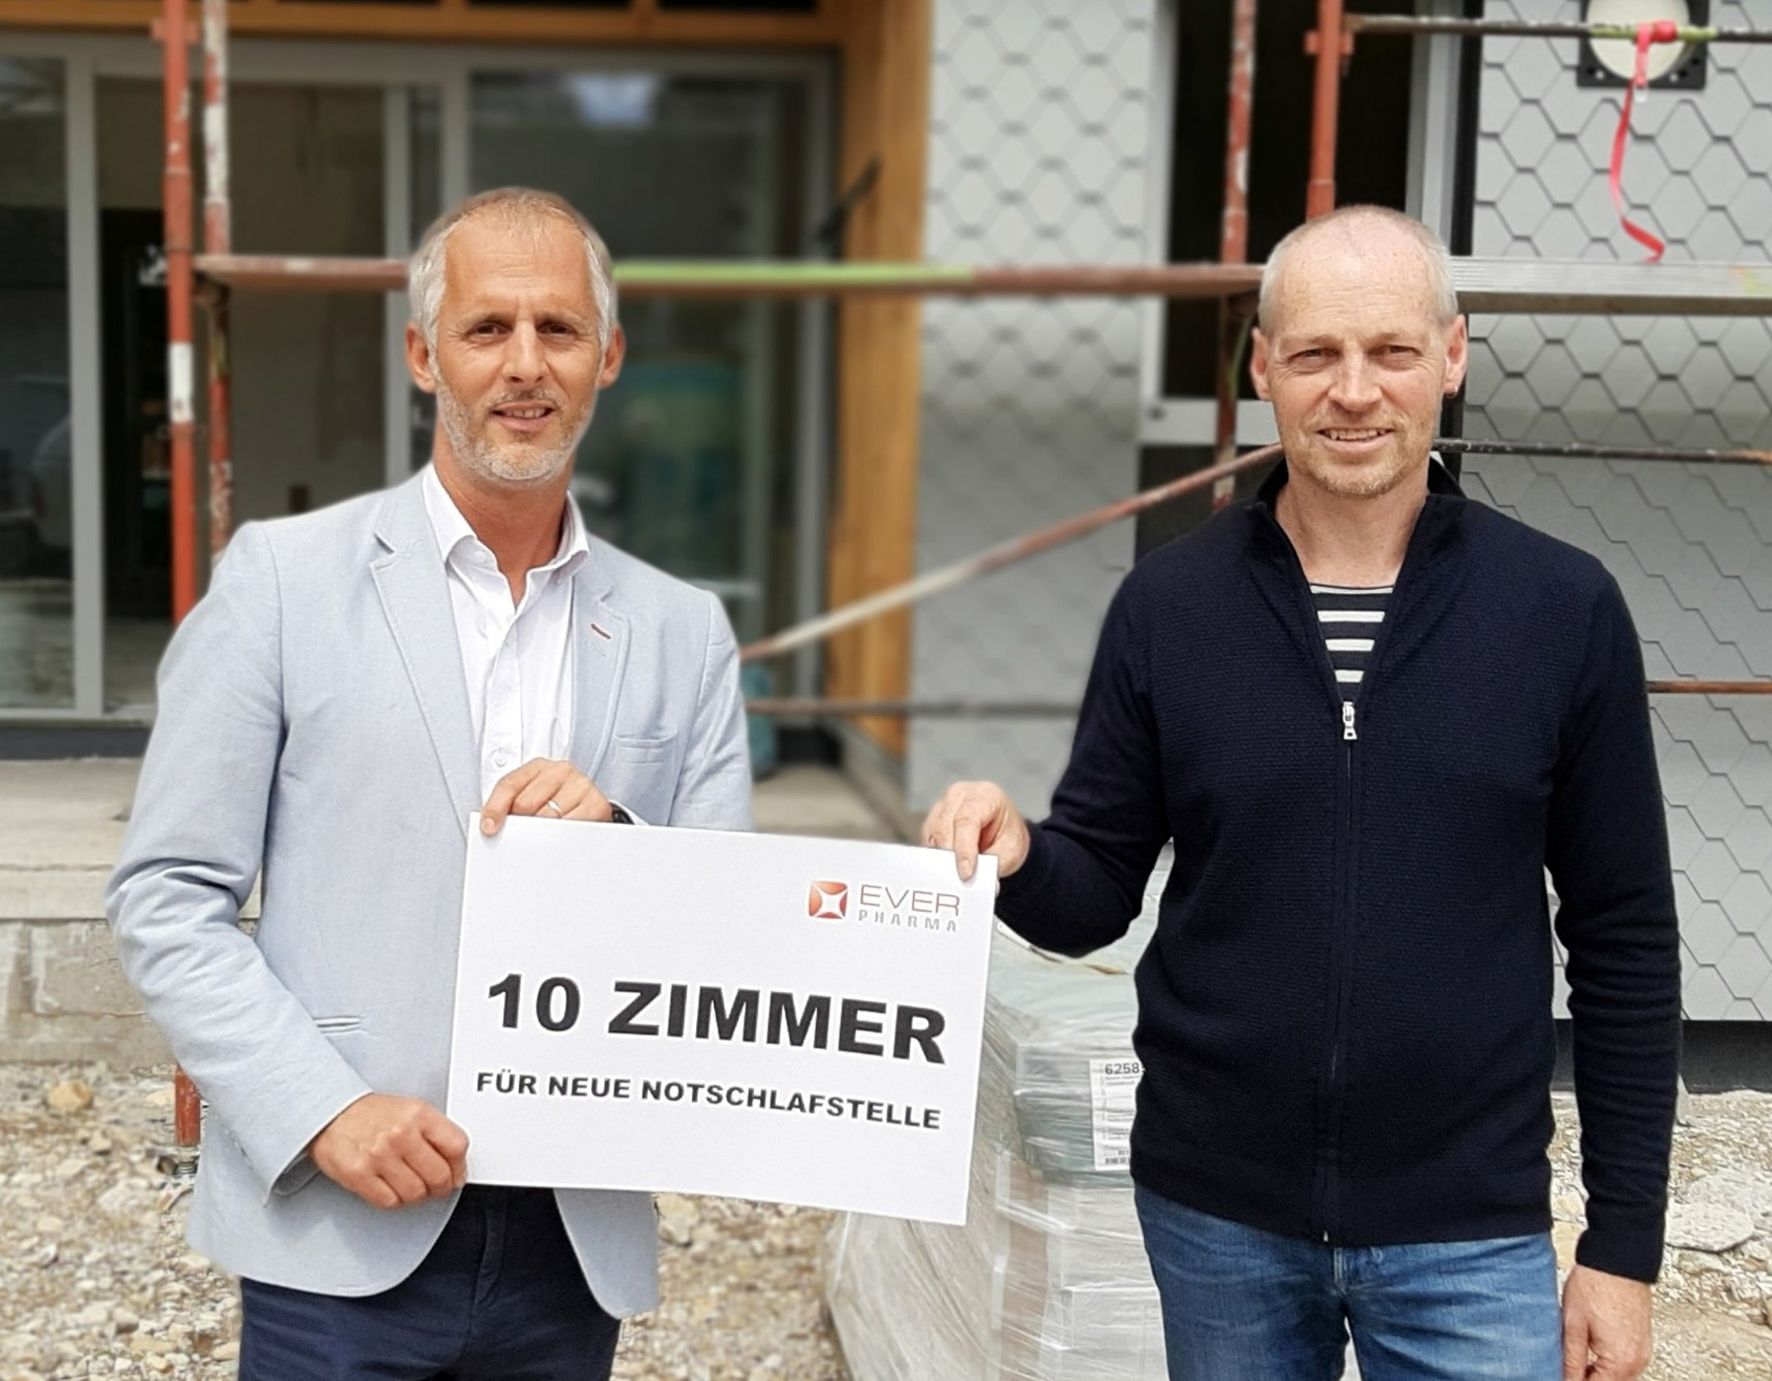 Foto: EVER Pharma-Vertriebsleiter für Europa, Norbert Hittenberger, übergibt dem Mosaik-Leiter Stefan Hindinger eine Spende für die Komplettausstattung von 10 Zimmern in der neuen Notschlafstelle Vöcklabruck (20.9.21)